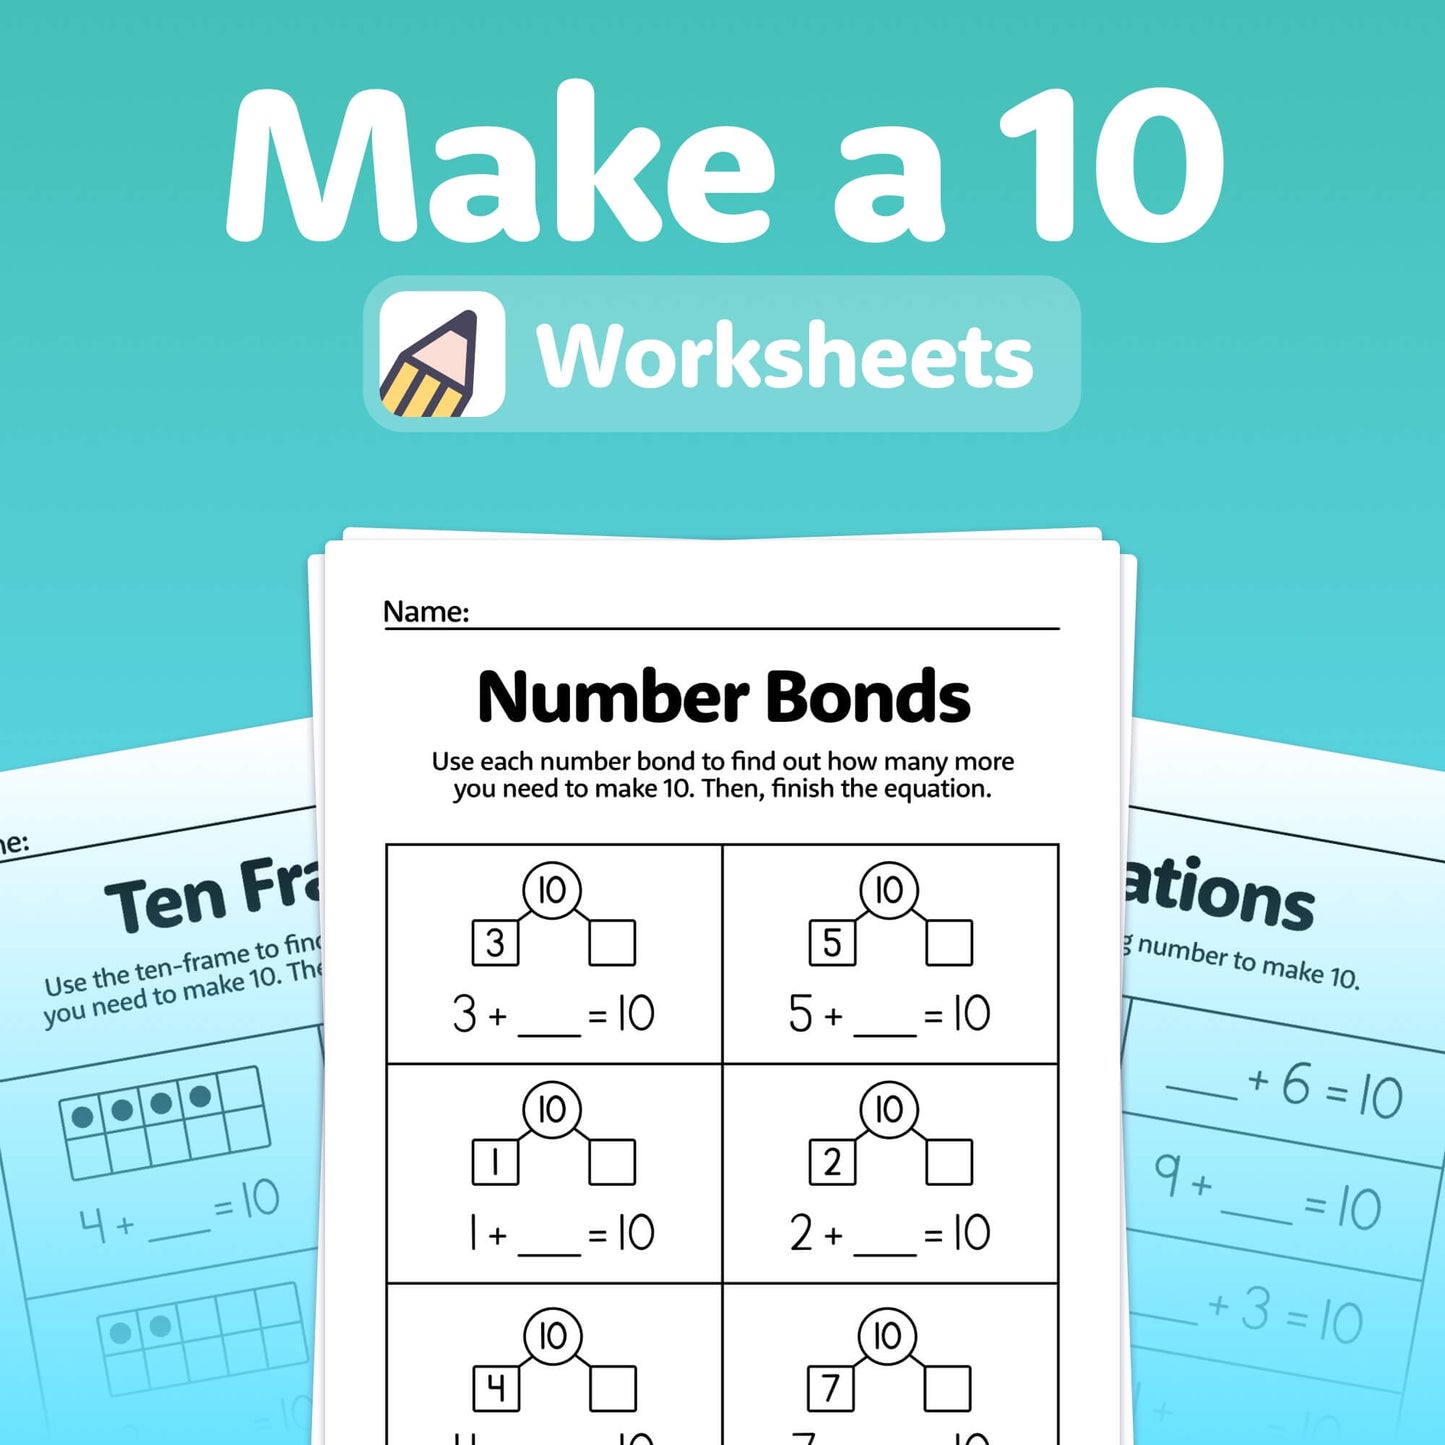 Make a 10 Worksheets